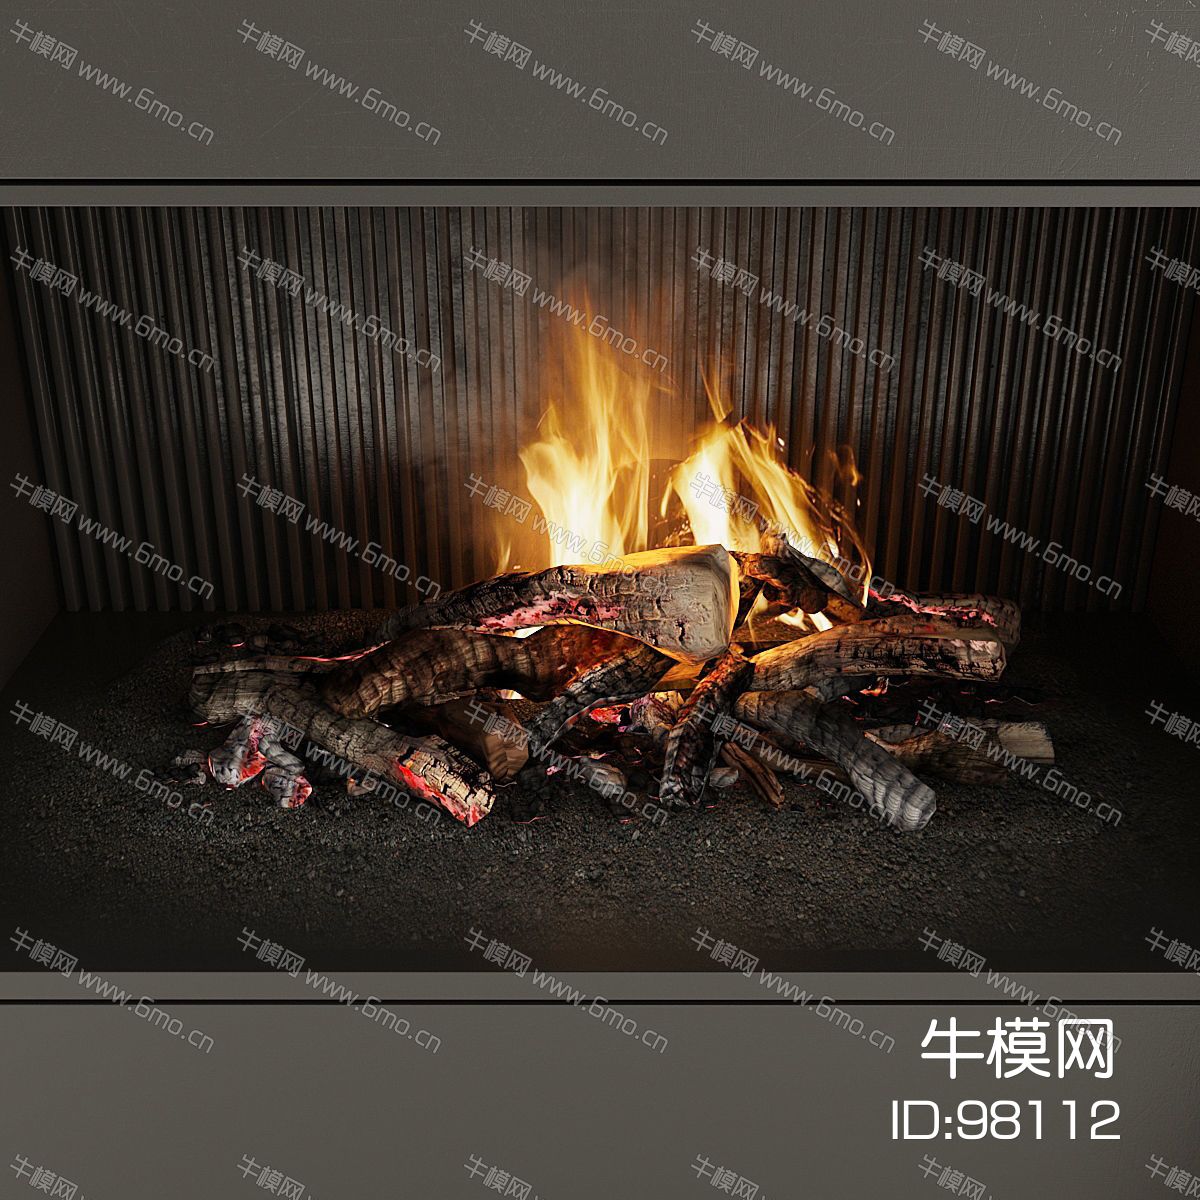 壁炉 柴火 木材 灰烬 火焰 火堆 烟雾